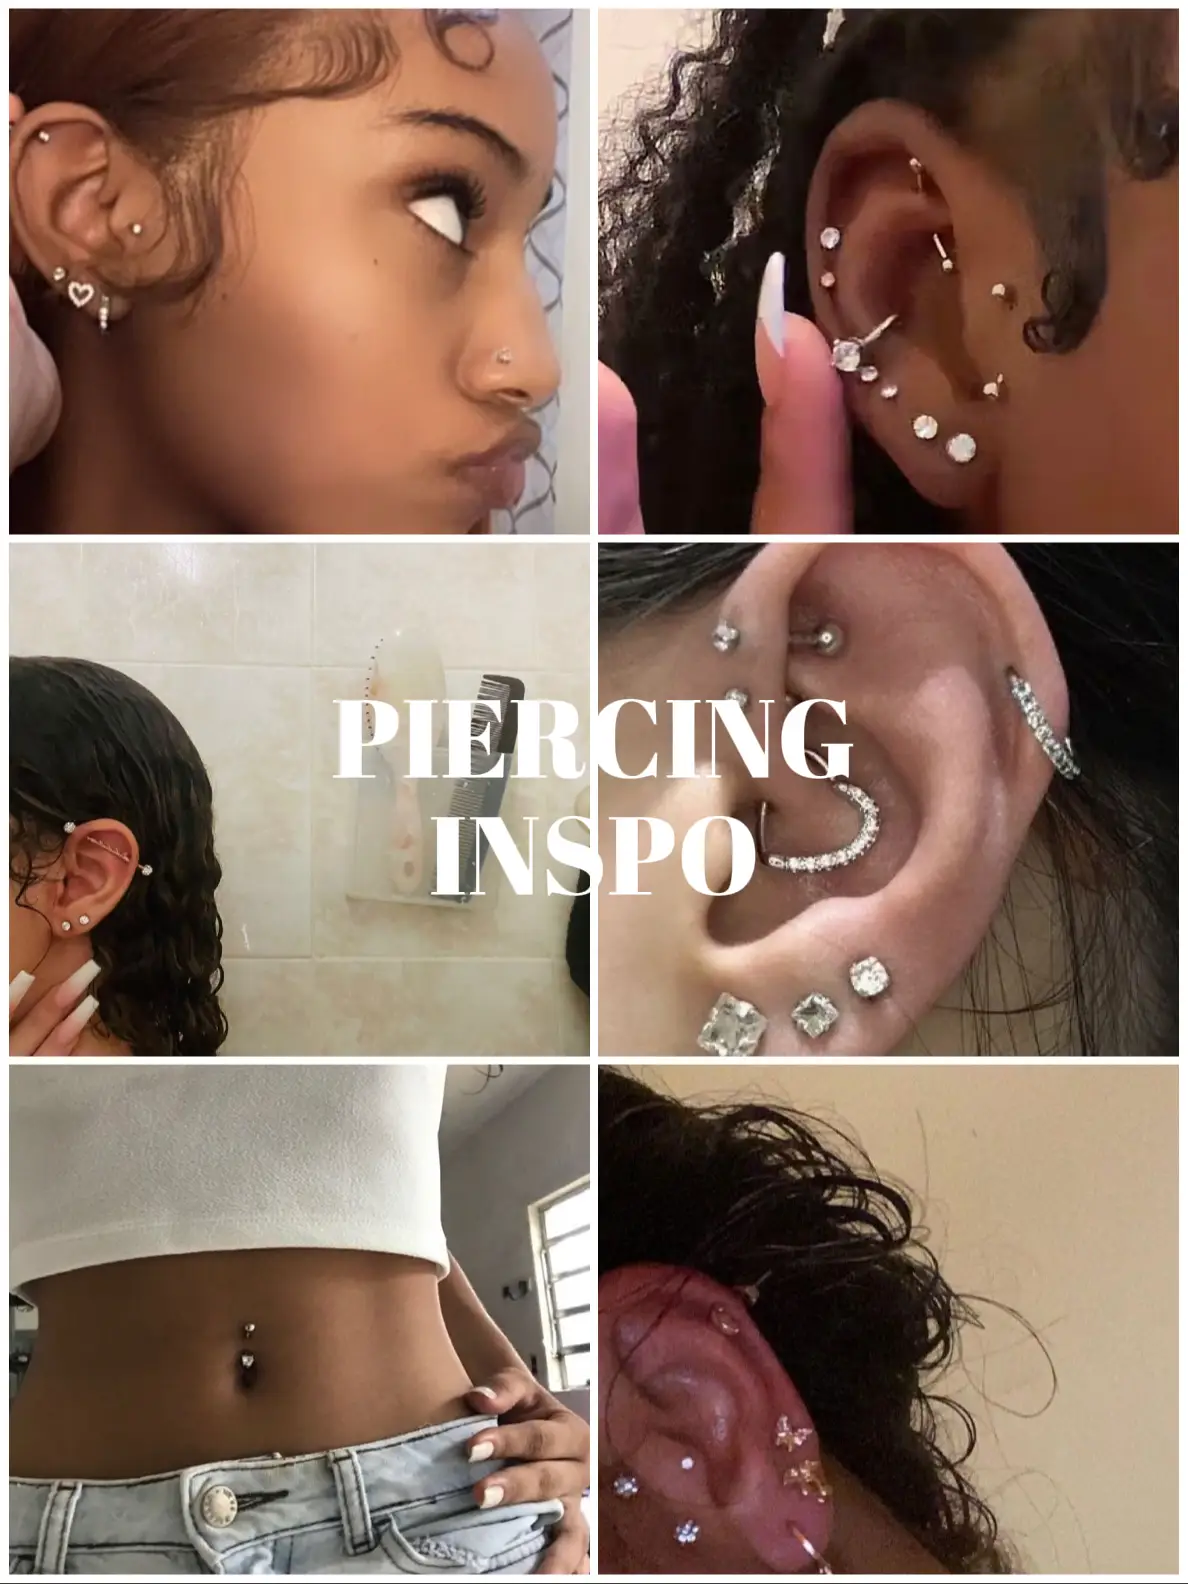 Trendy Cute Ear Piercing Ideas  Cool ear piercings, Pretty ear piercings,  Ear piercings